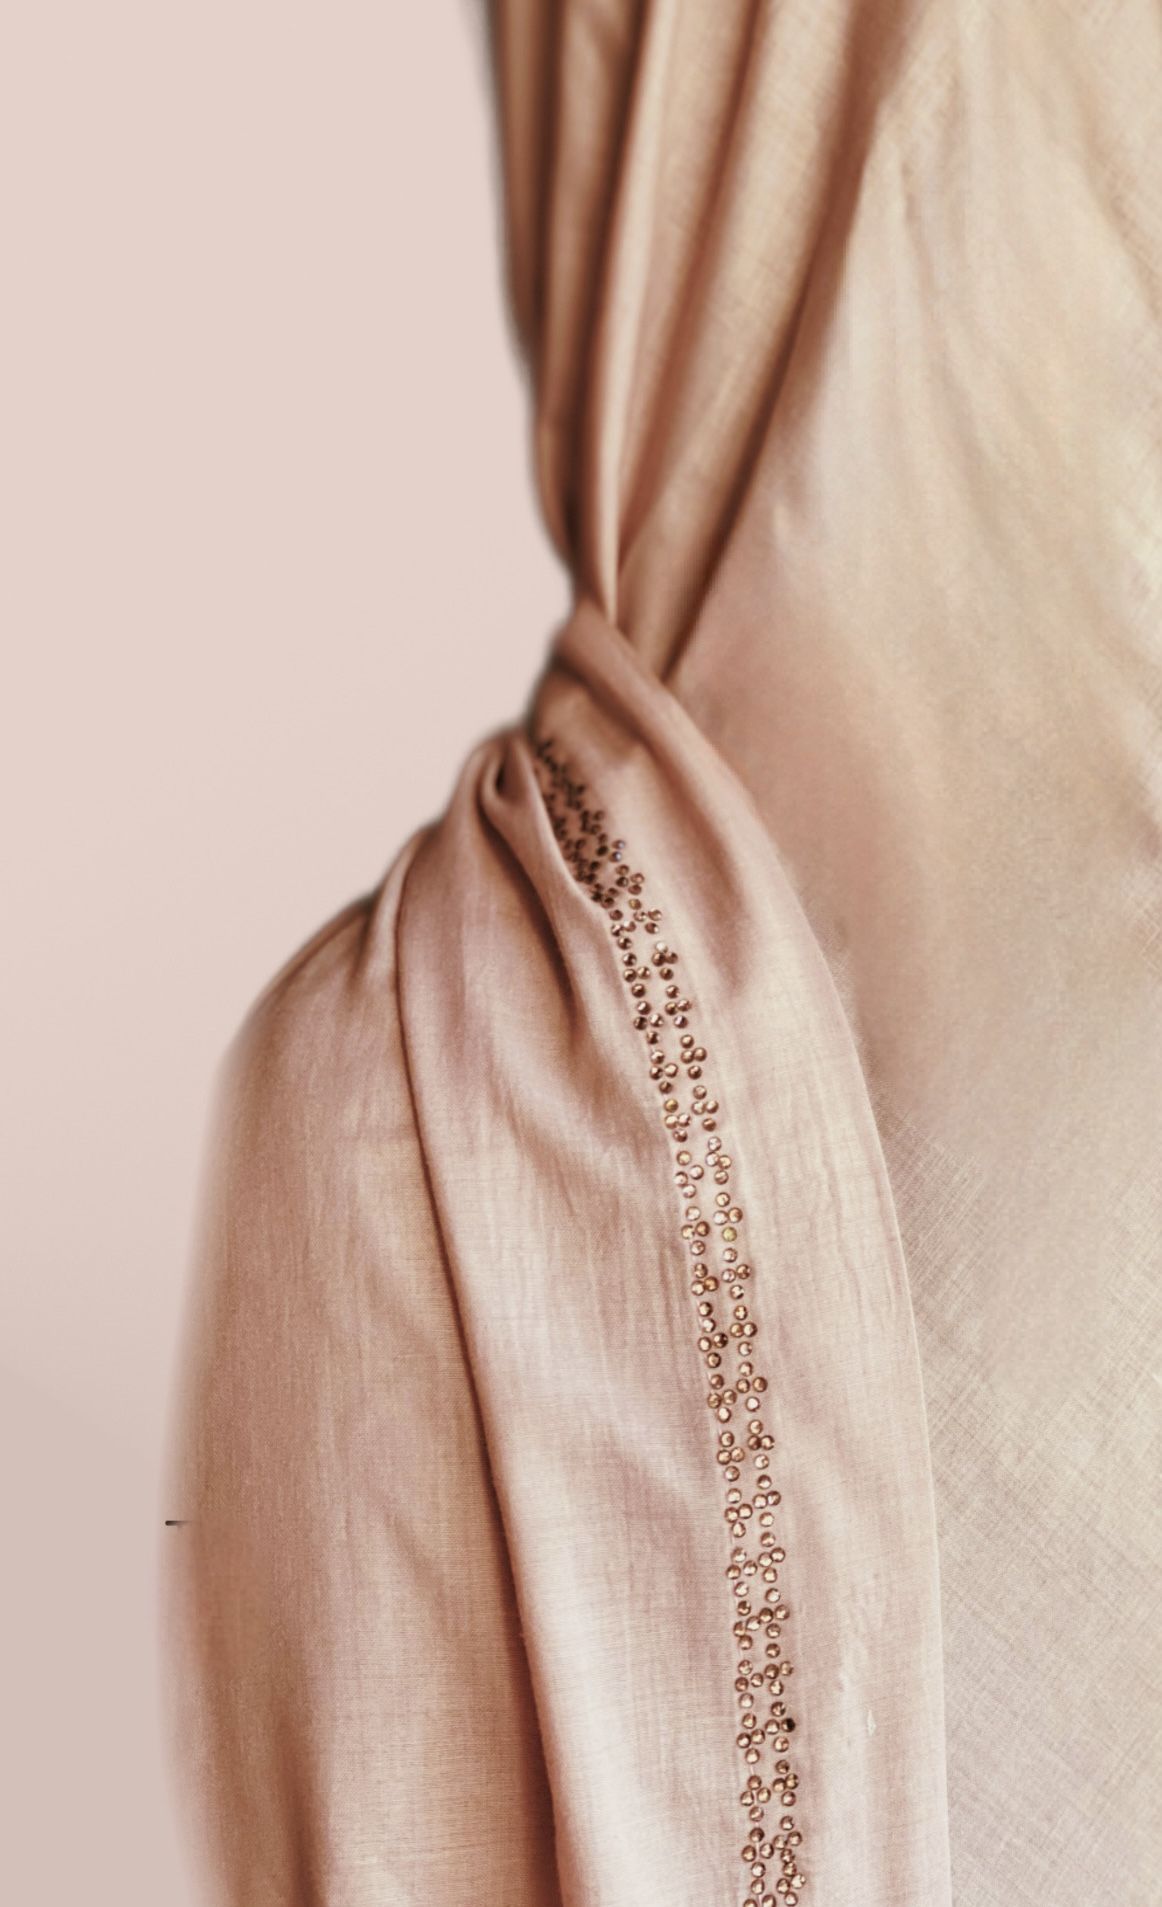 Breezy Summer shawl - Dusty Pink